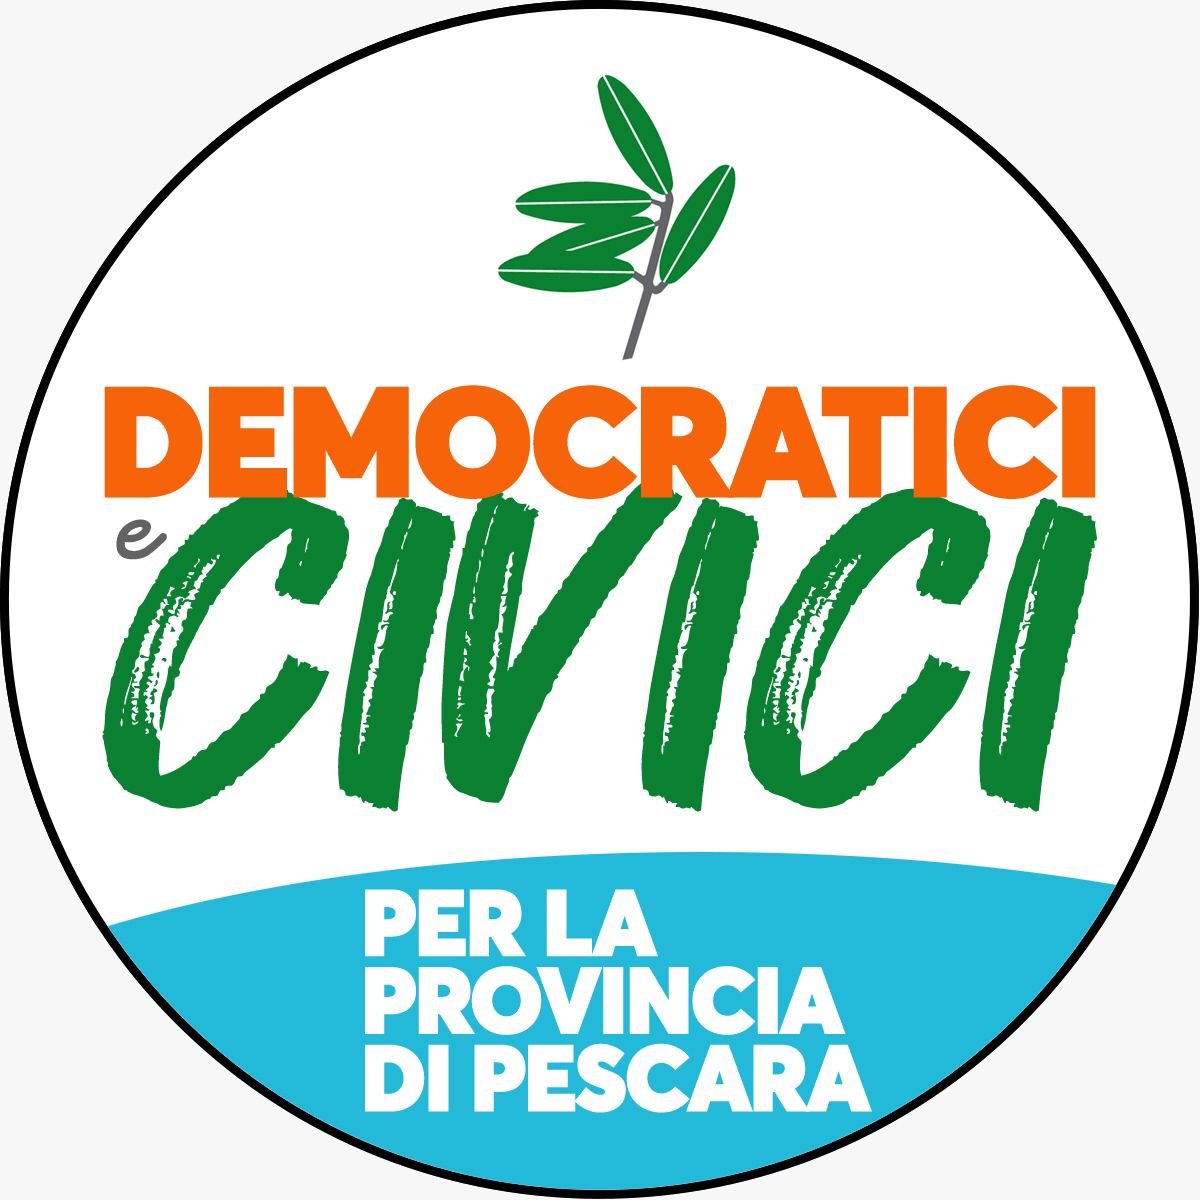 Provinciali Pescara, PD: “Democratici e Civici” con D’Ascanio Presidente è l’unica alternativa al centrodestra